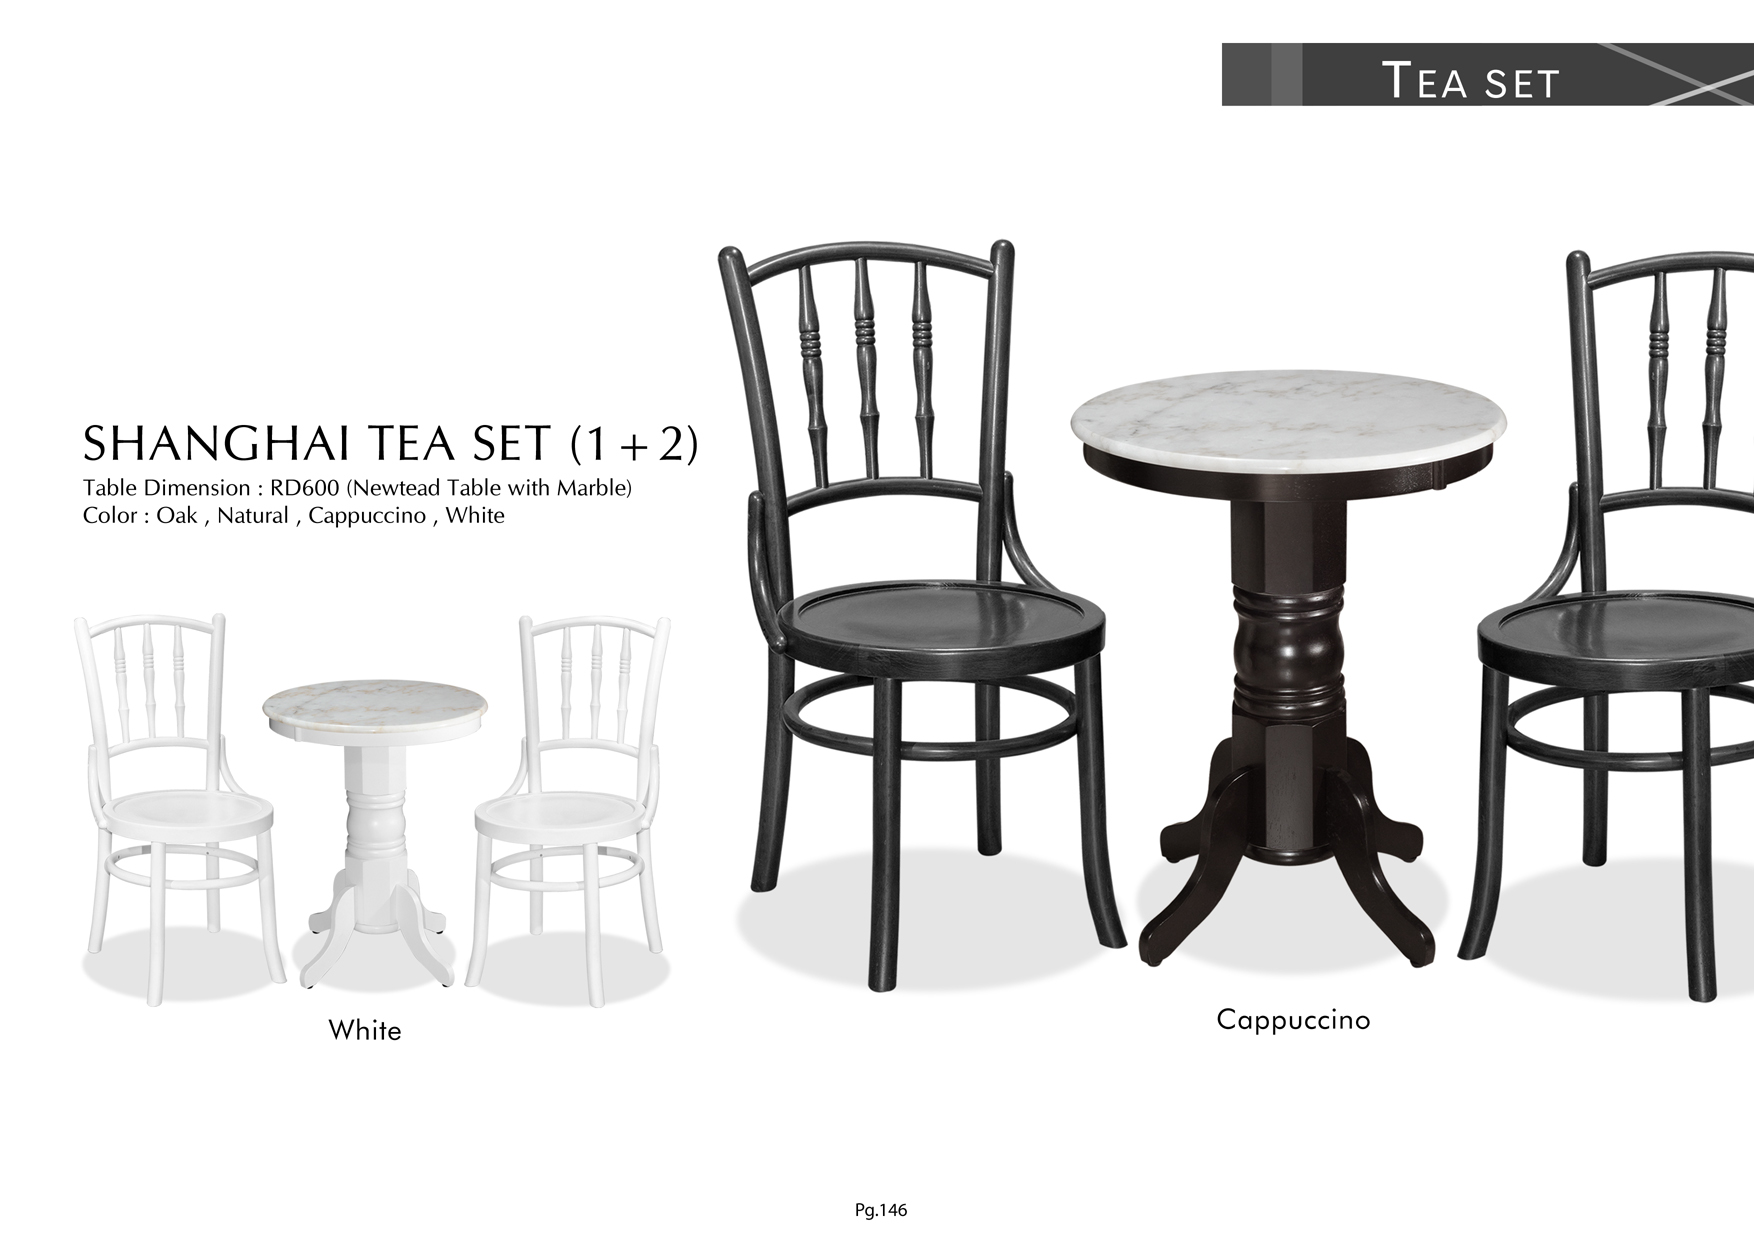 Product: PG146. SHANGHAI TEA SET